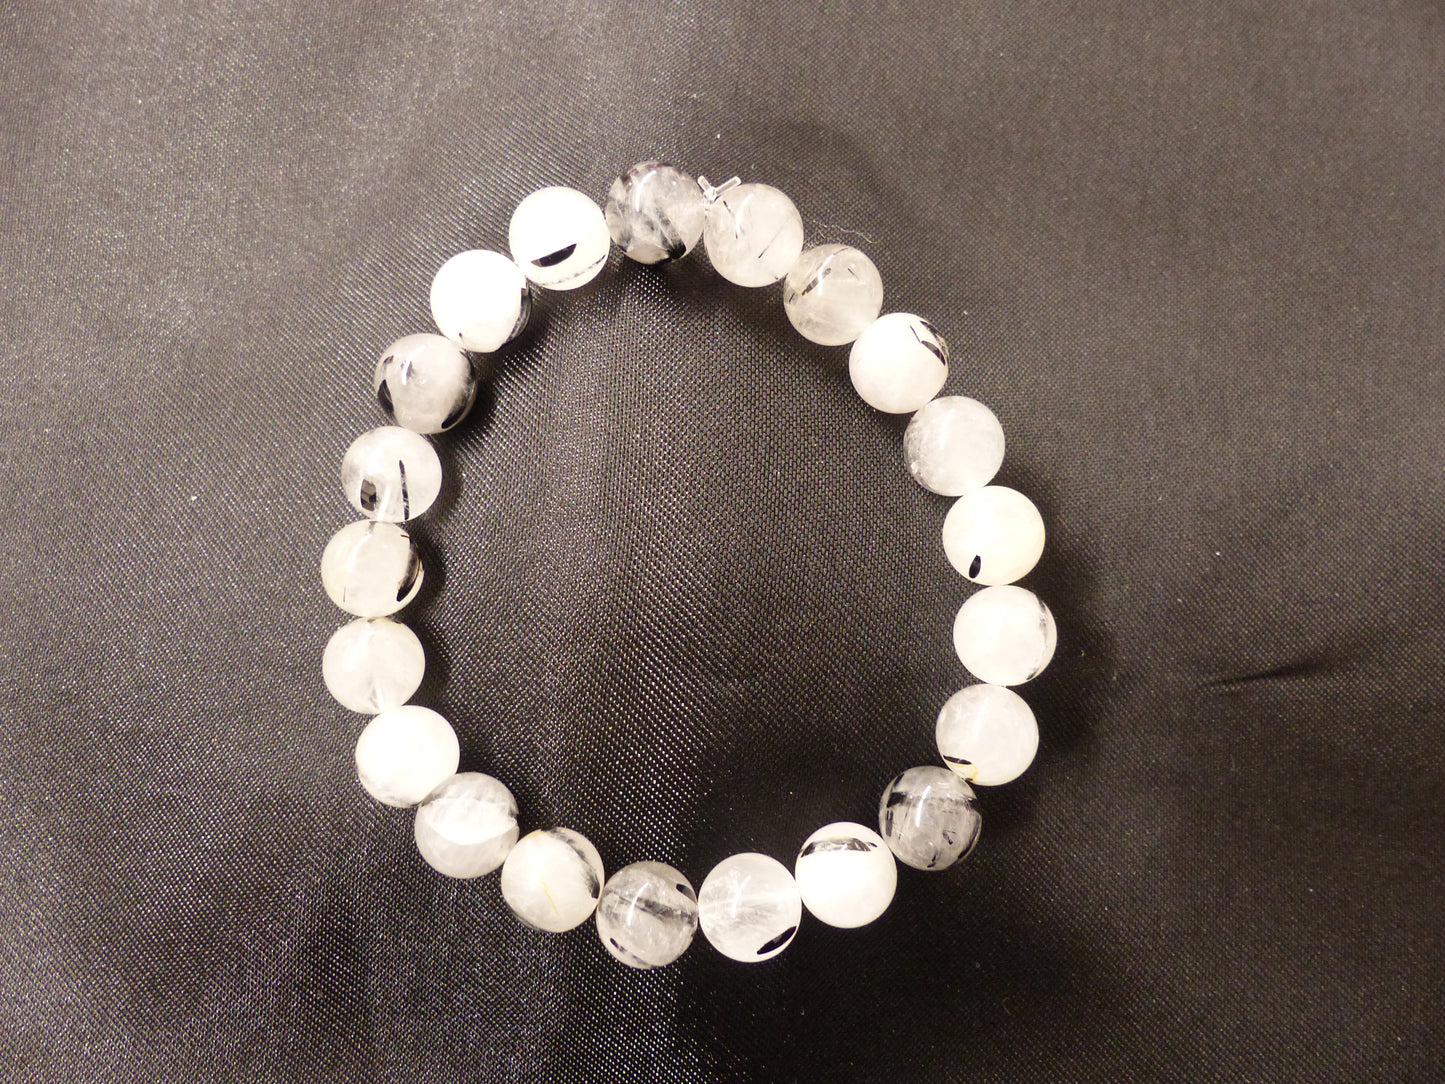 Bracelet en quartz tourmaline, perles 8 mm